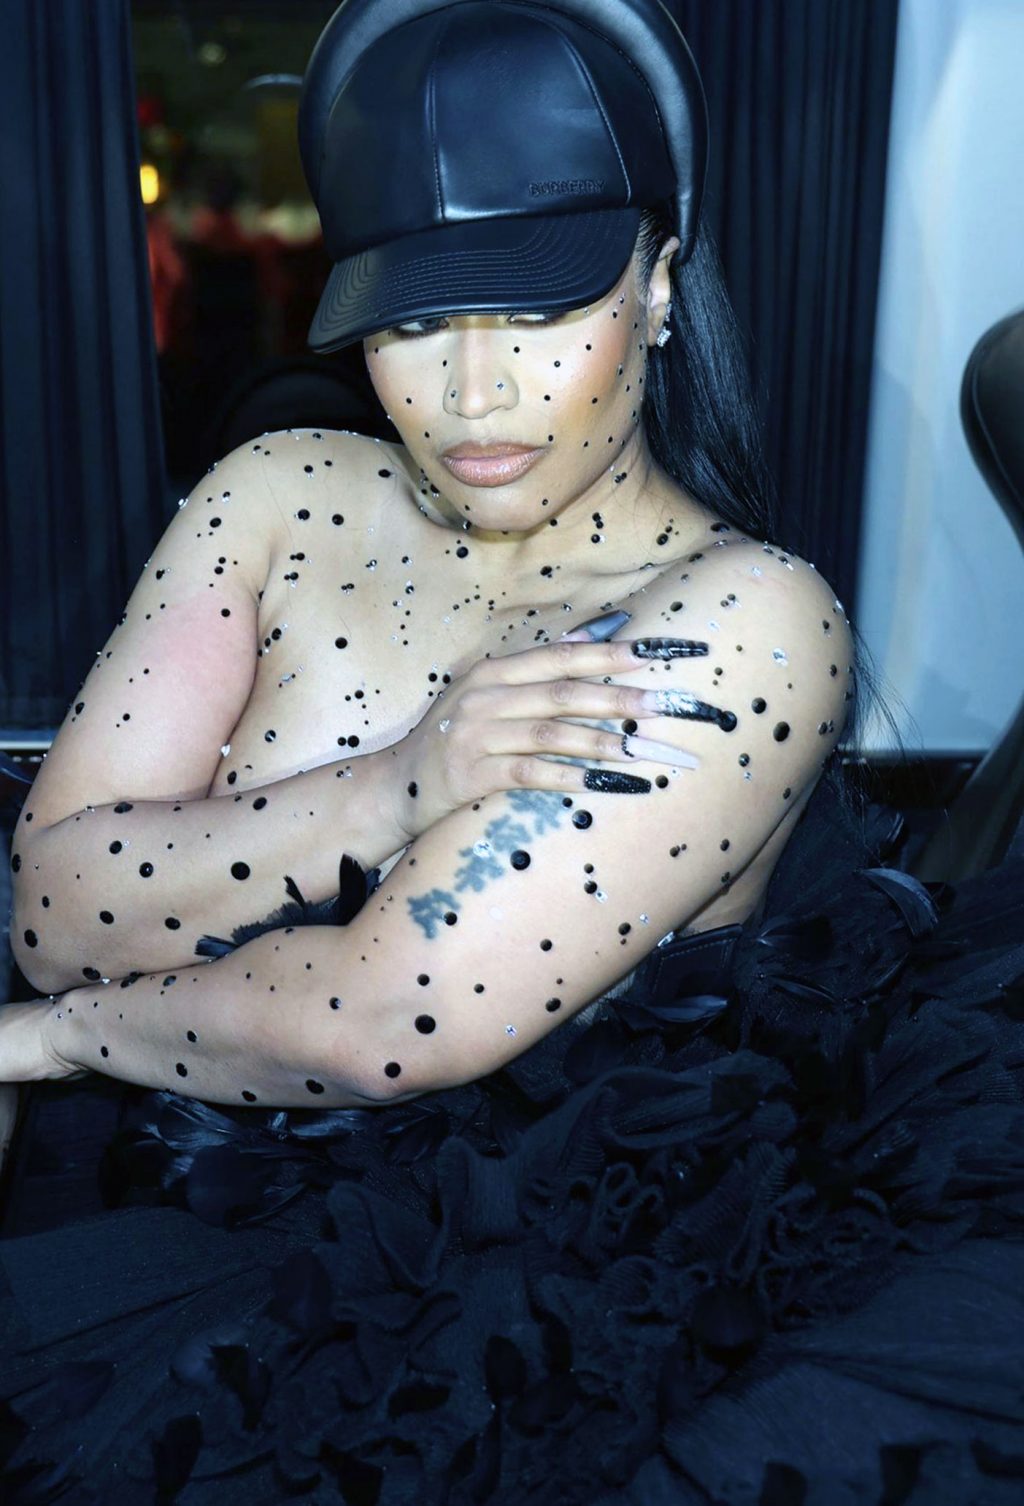 Nicki Minaj nude sextape topless ass tits dress met cleavage ScandalPost 4 1024x1506 optimized